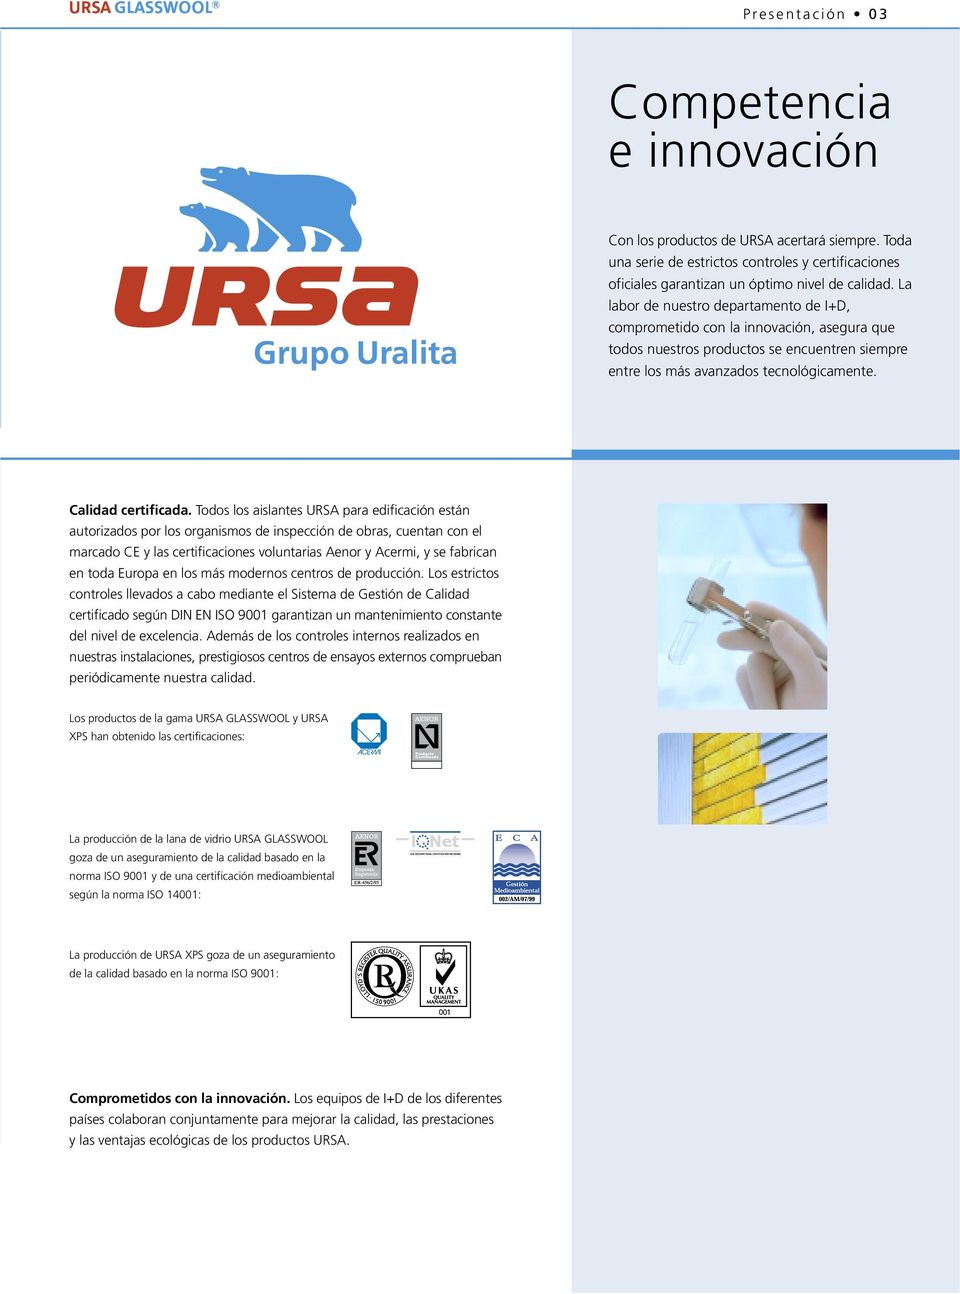 Todos los aislantes URSA para edificación están autorizados por los organismos de inspección de obras, cuentan con el marcado CE y las certificaciones voluntarias Aenor y Acermi, y se fabrican en